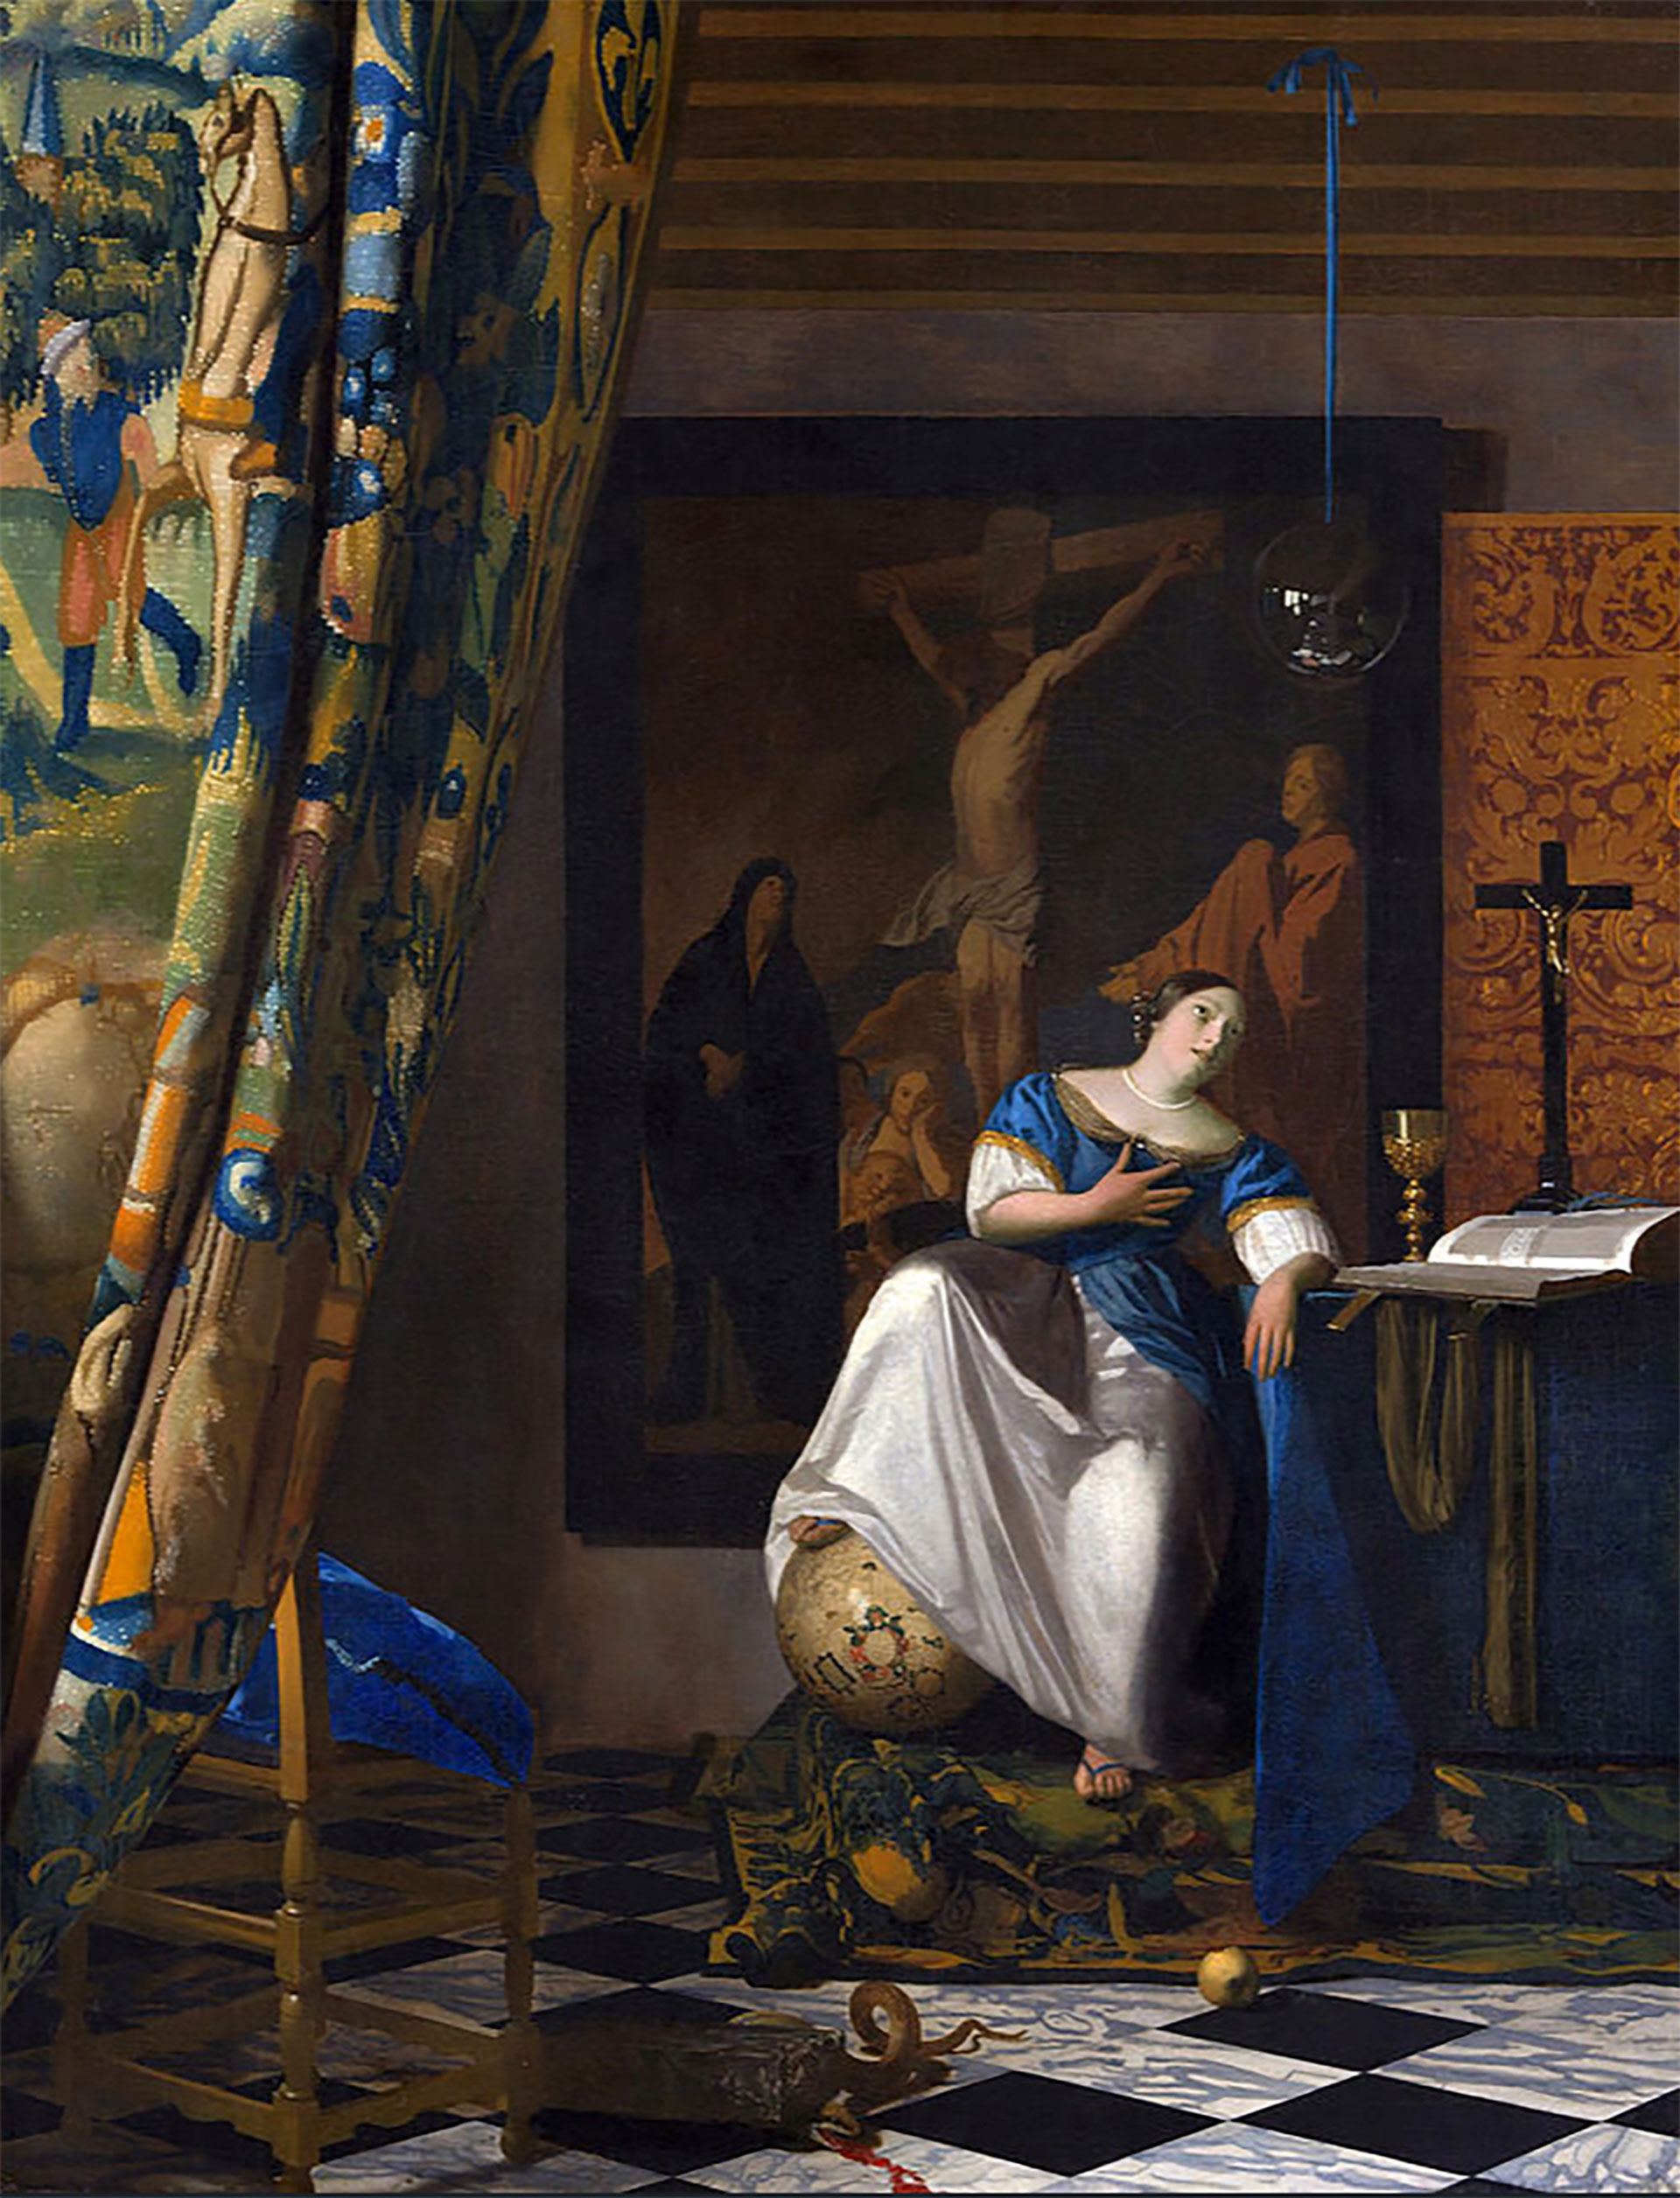 "The Allegory of the Catholic Faith"by Johannes Vermeer